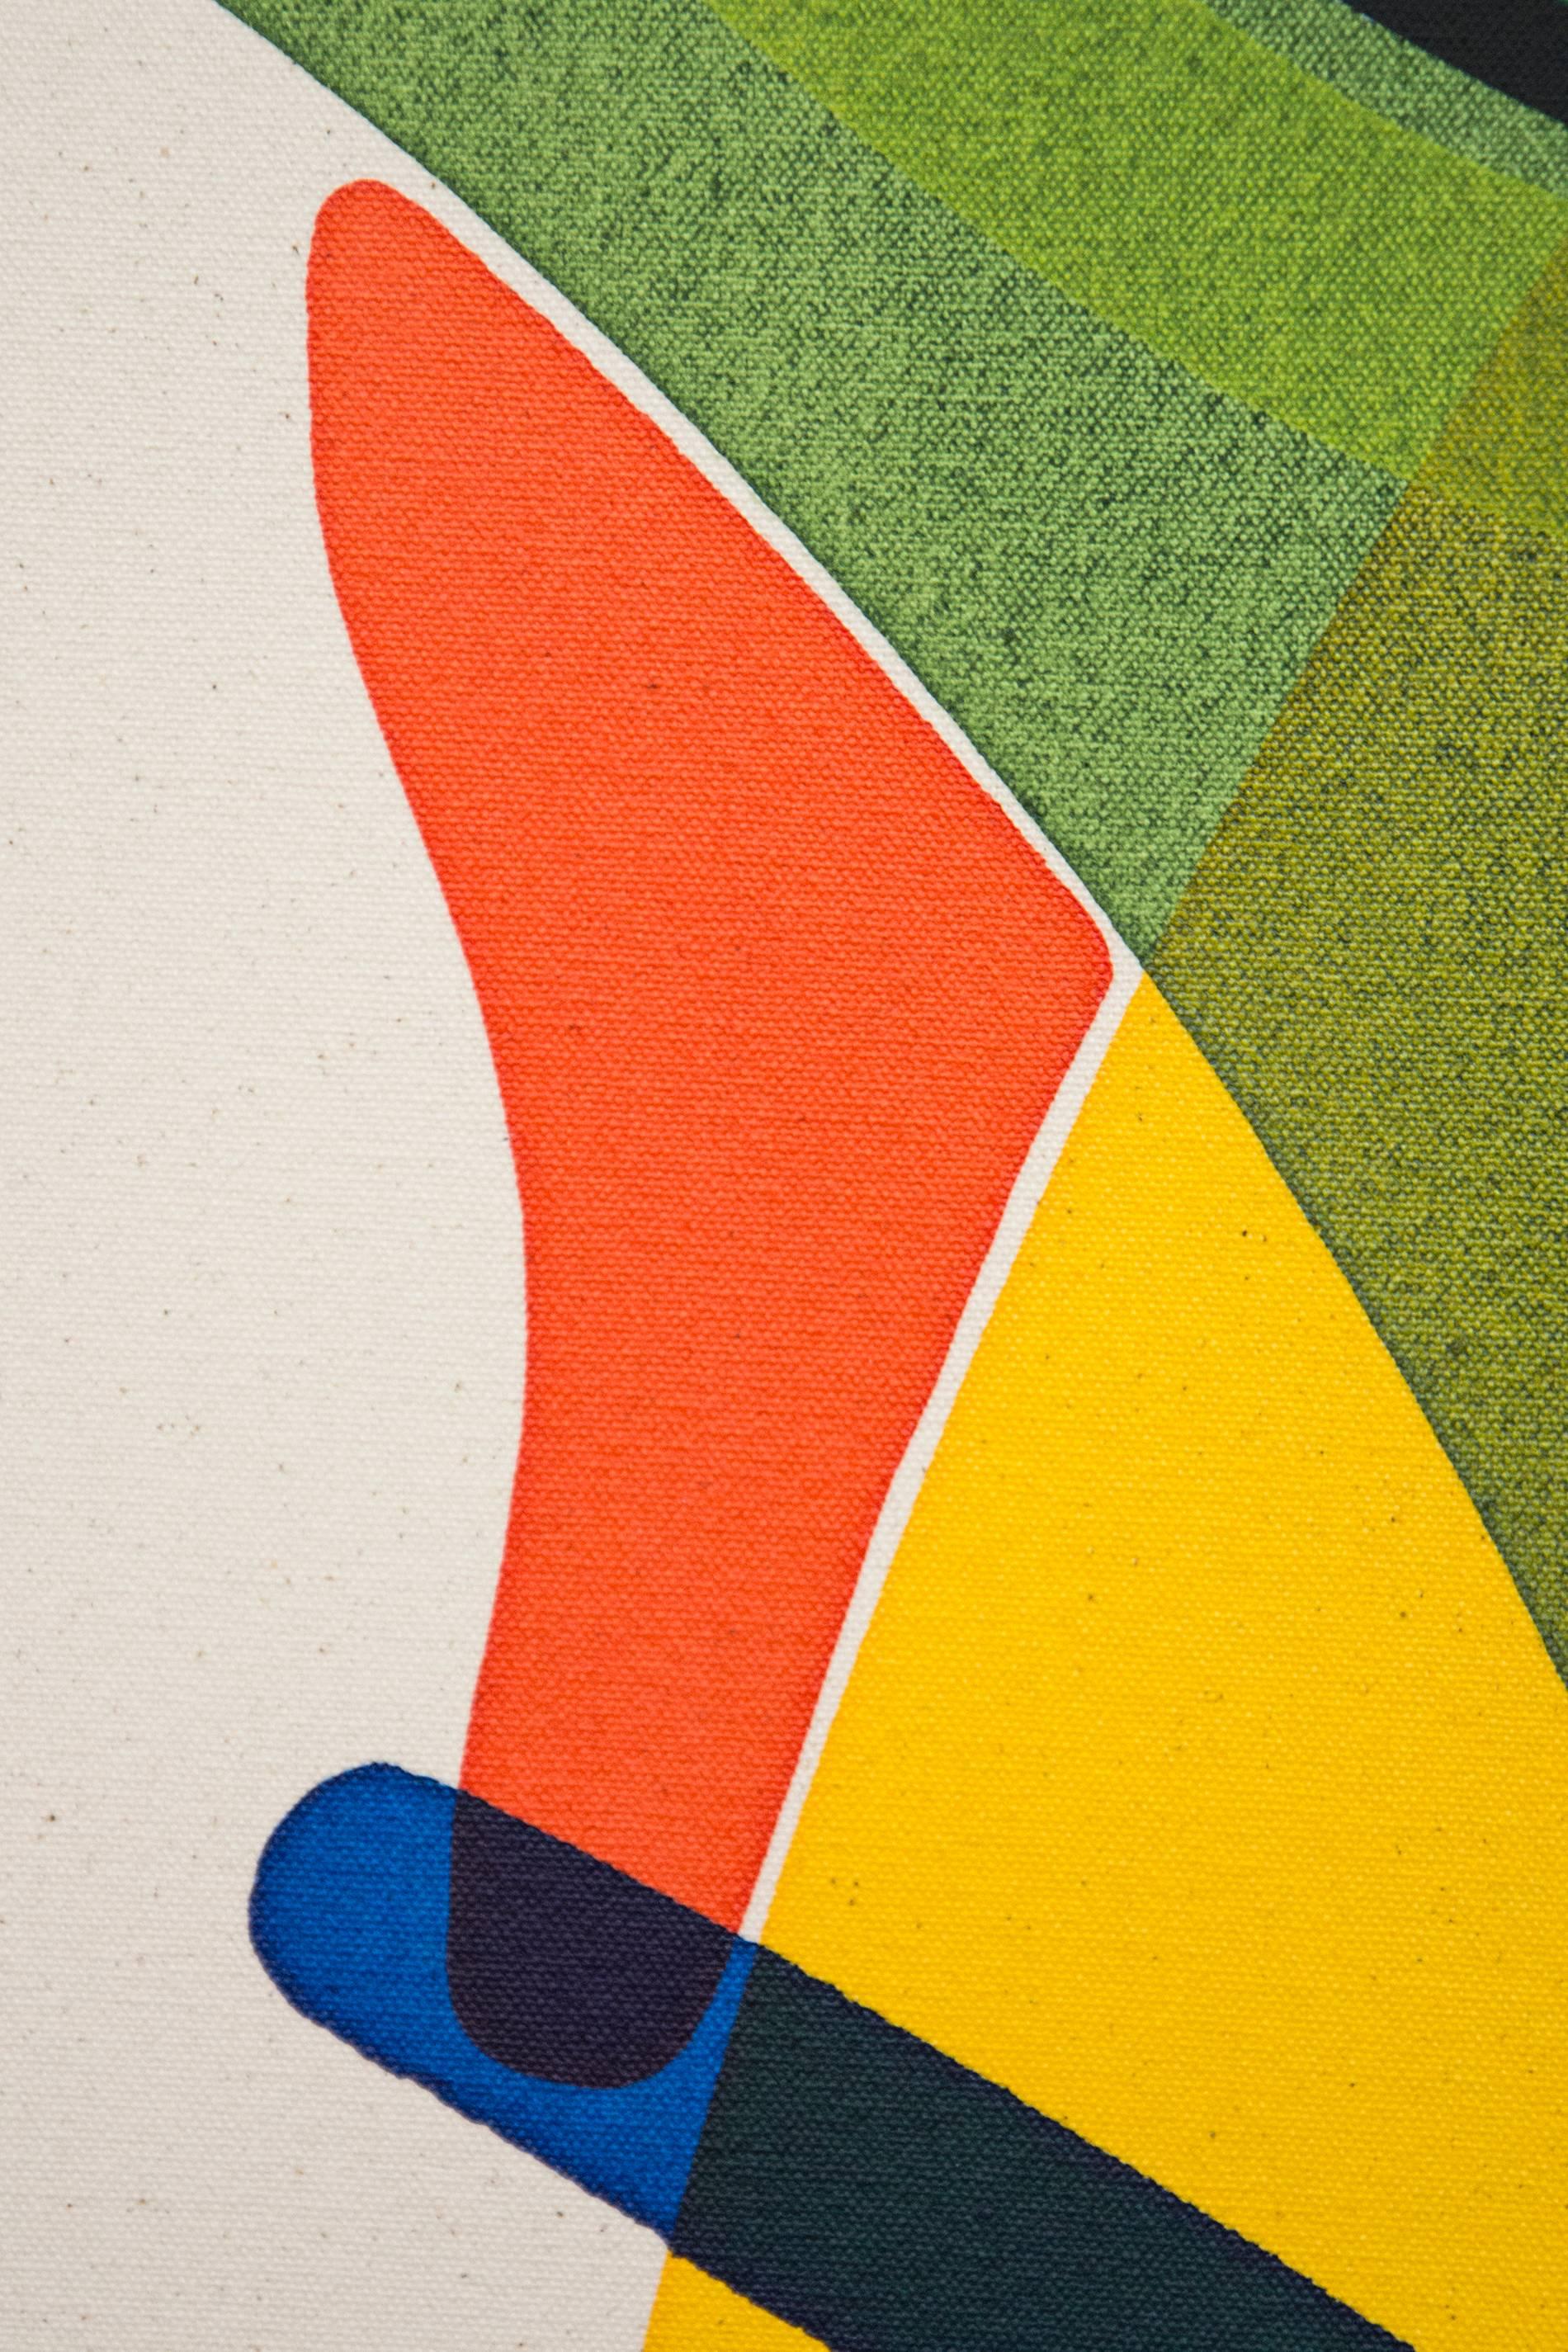 Cette œuvre figurative engageante aux formes abstraites audacieuses et aux couleurs brillantes a été peinte par Aron Hill. L'artiste de Calgary utilise des arcs de couleurs pures - violet, vert tilleul, turquoise et vert forêt - qui se croisent avec